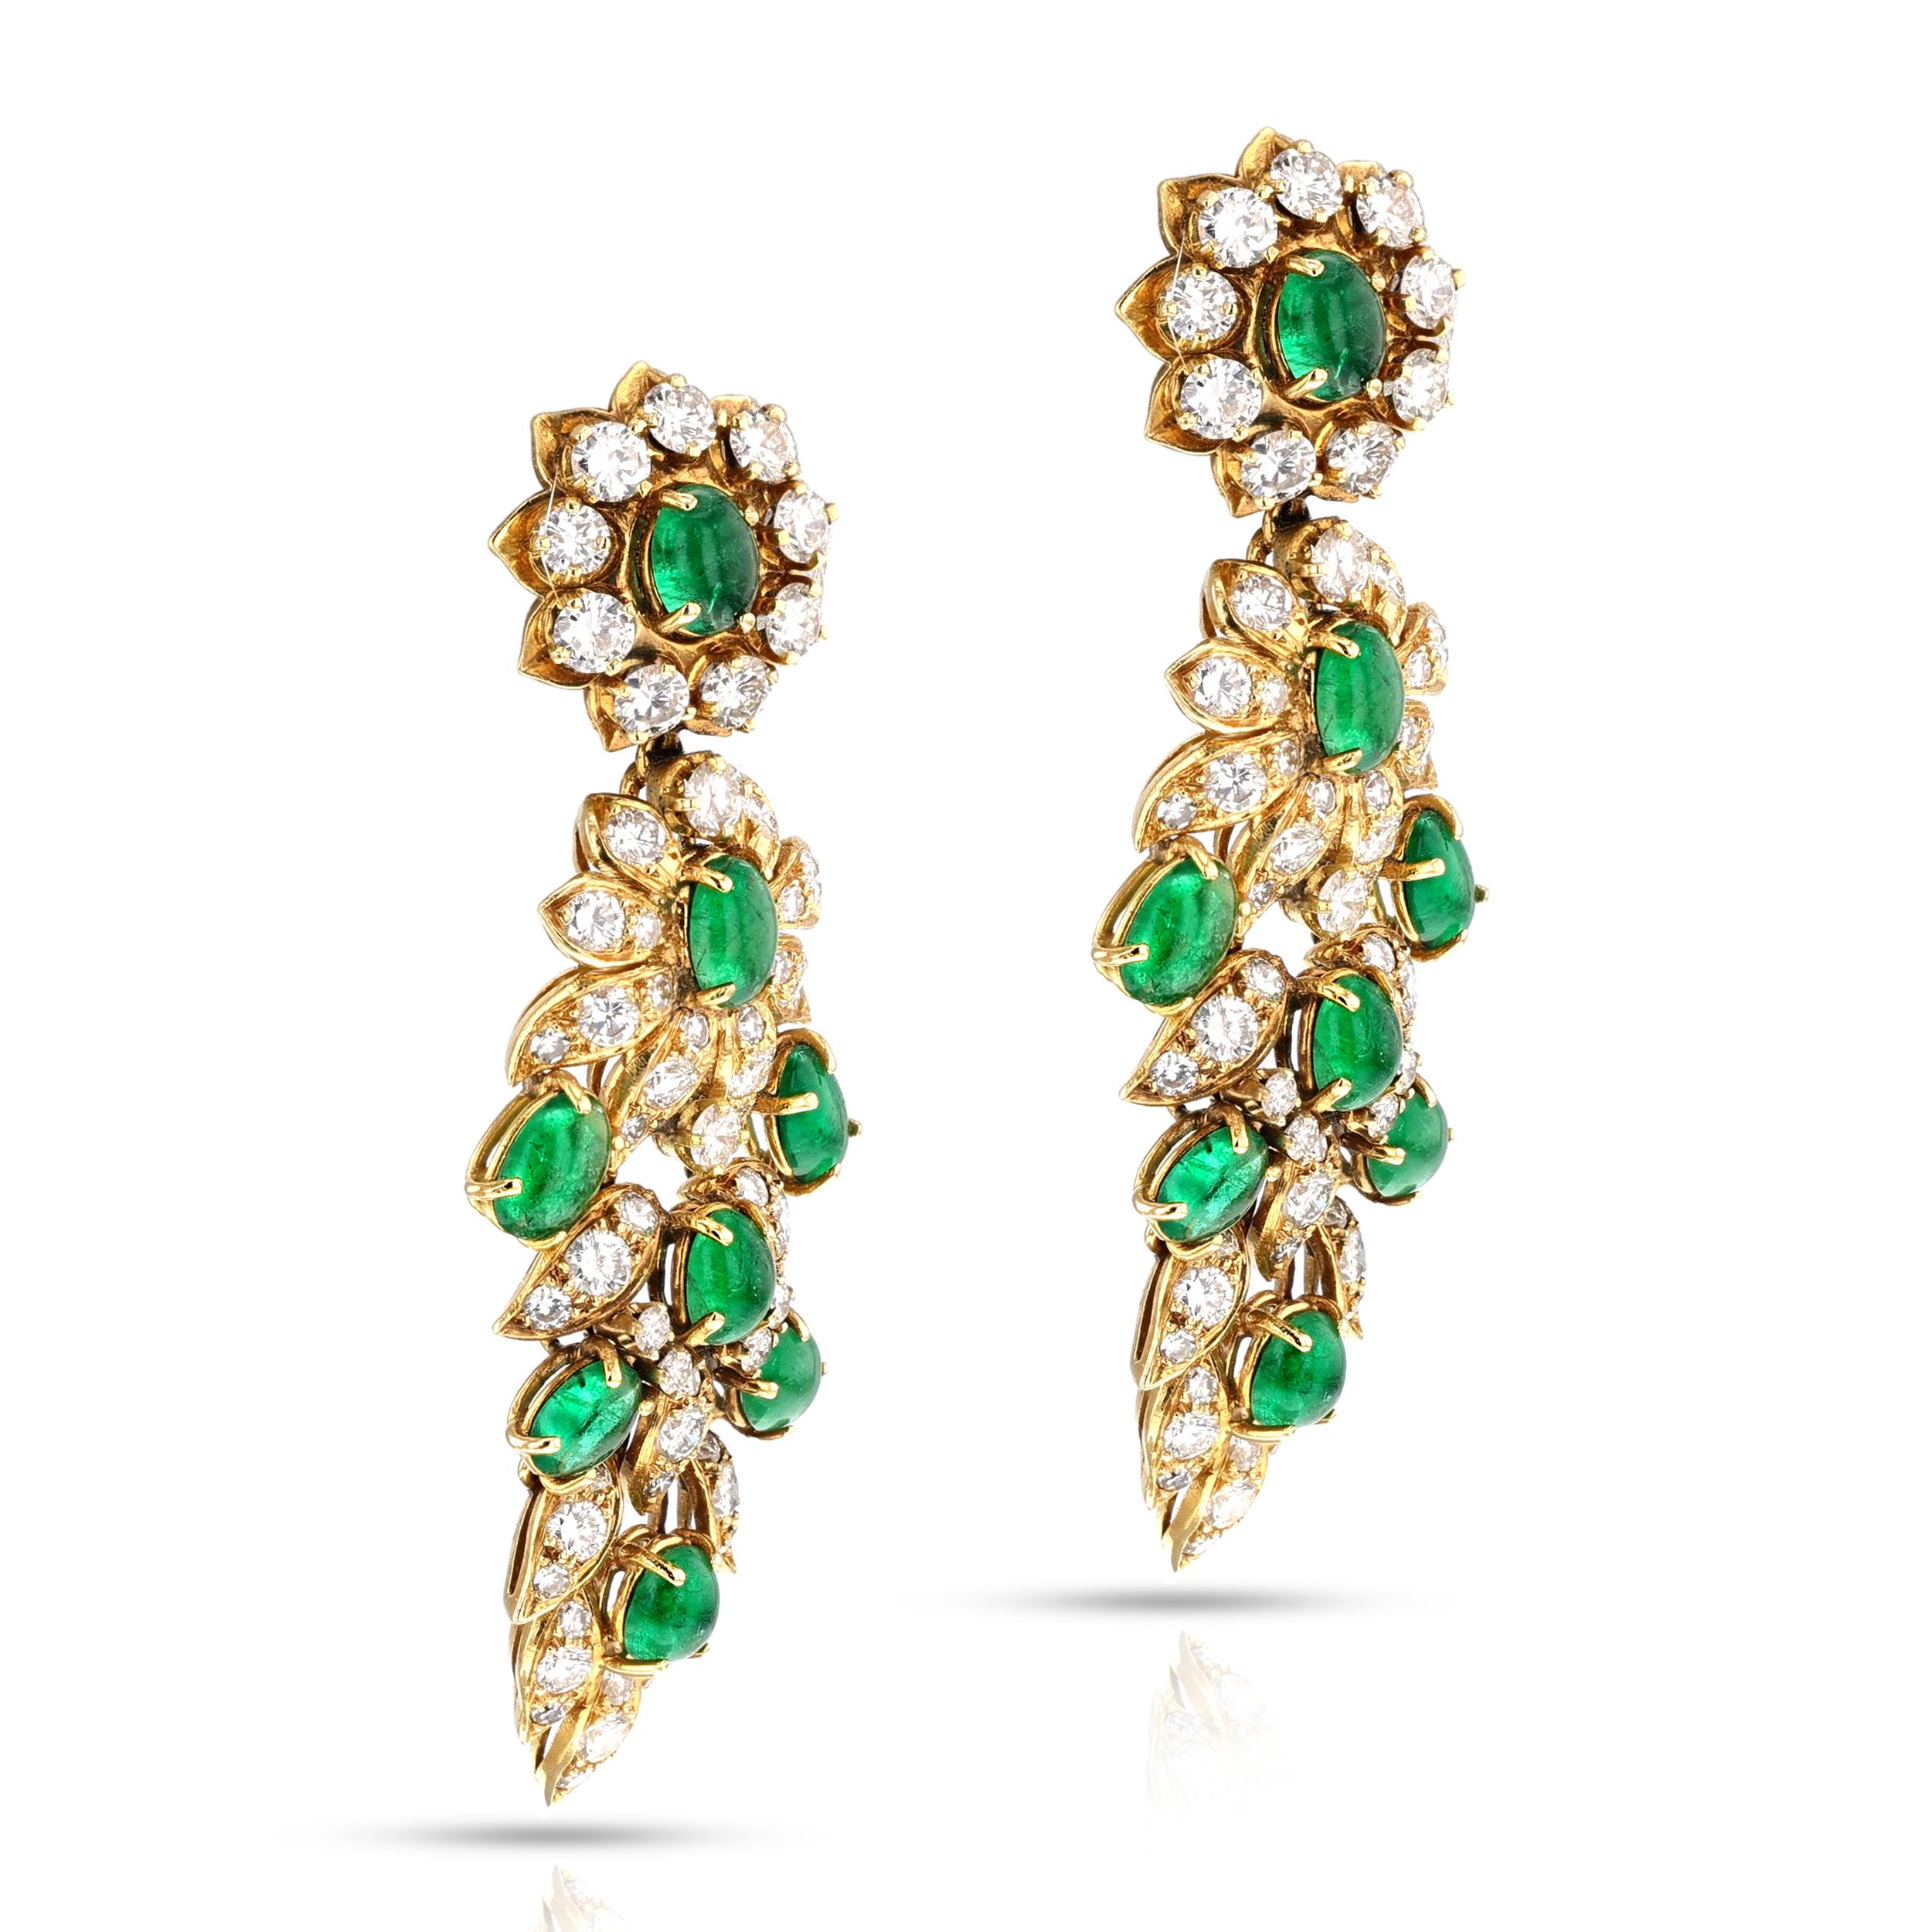 Dies ist ein schönes und schickes Paar Ohrringe mit Smaragd und Diamanten von Vourakis. Dieses elegante und sorgfältig gearbeitete Paar Ohrringe ist mit sechzehn echten und natürlichen Smaragden im Cabochon-Schliff besetzt, die mit